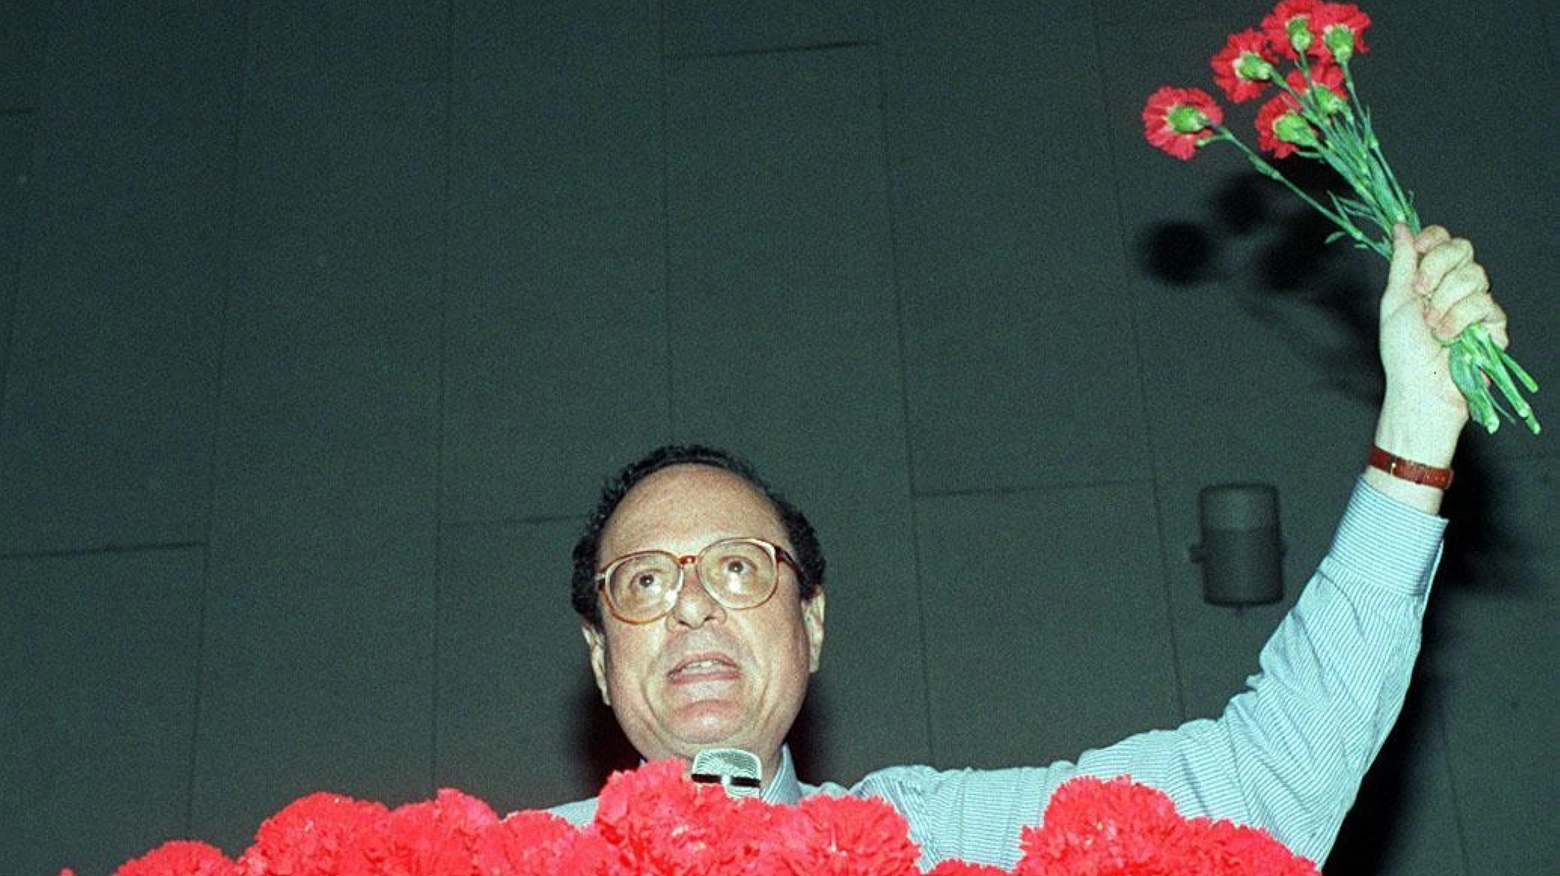 Ugo Intini è morto a 82 anni: una foto storica con il garofano rosso, simbolo Psi, mostrato con orgoglio alla platea